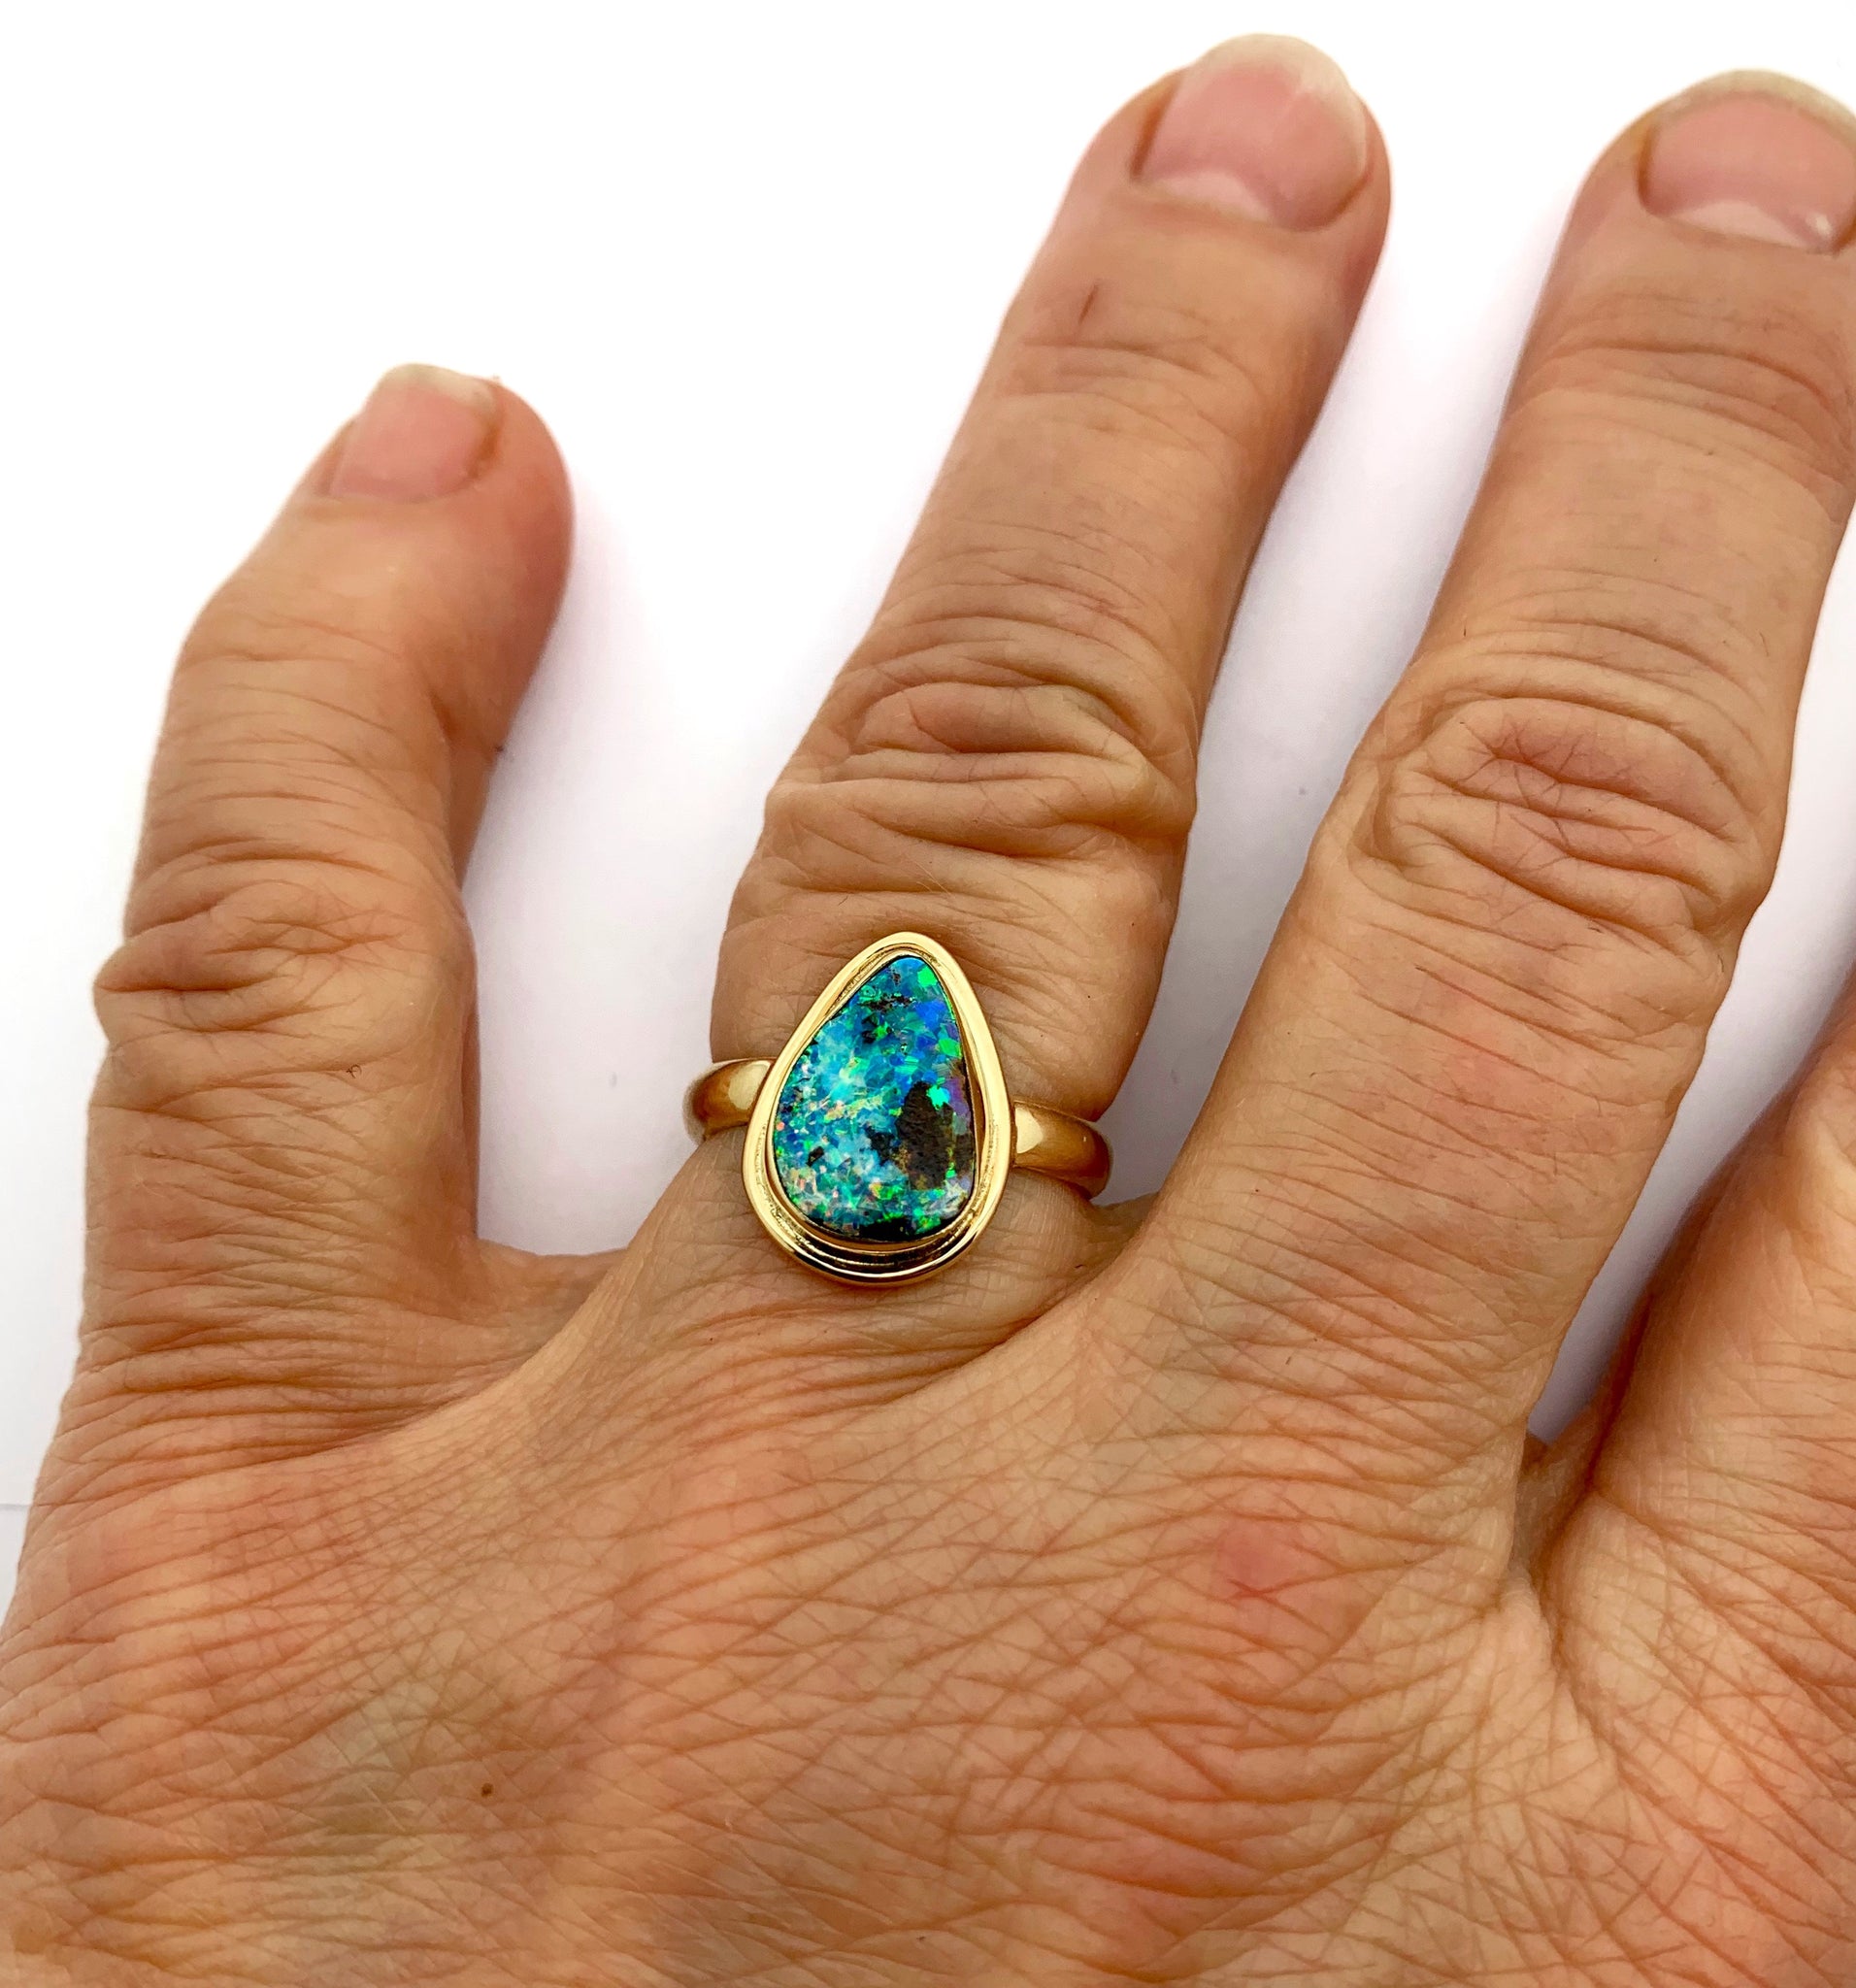 Australian Opal Set in 14k Yellow Gold Ring